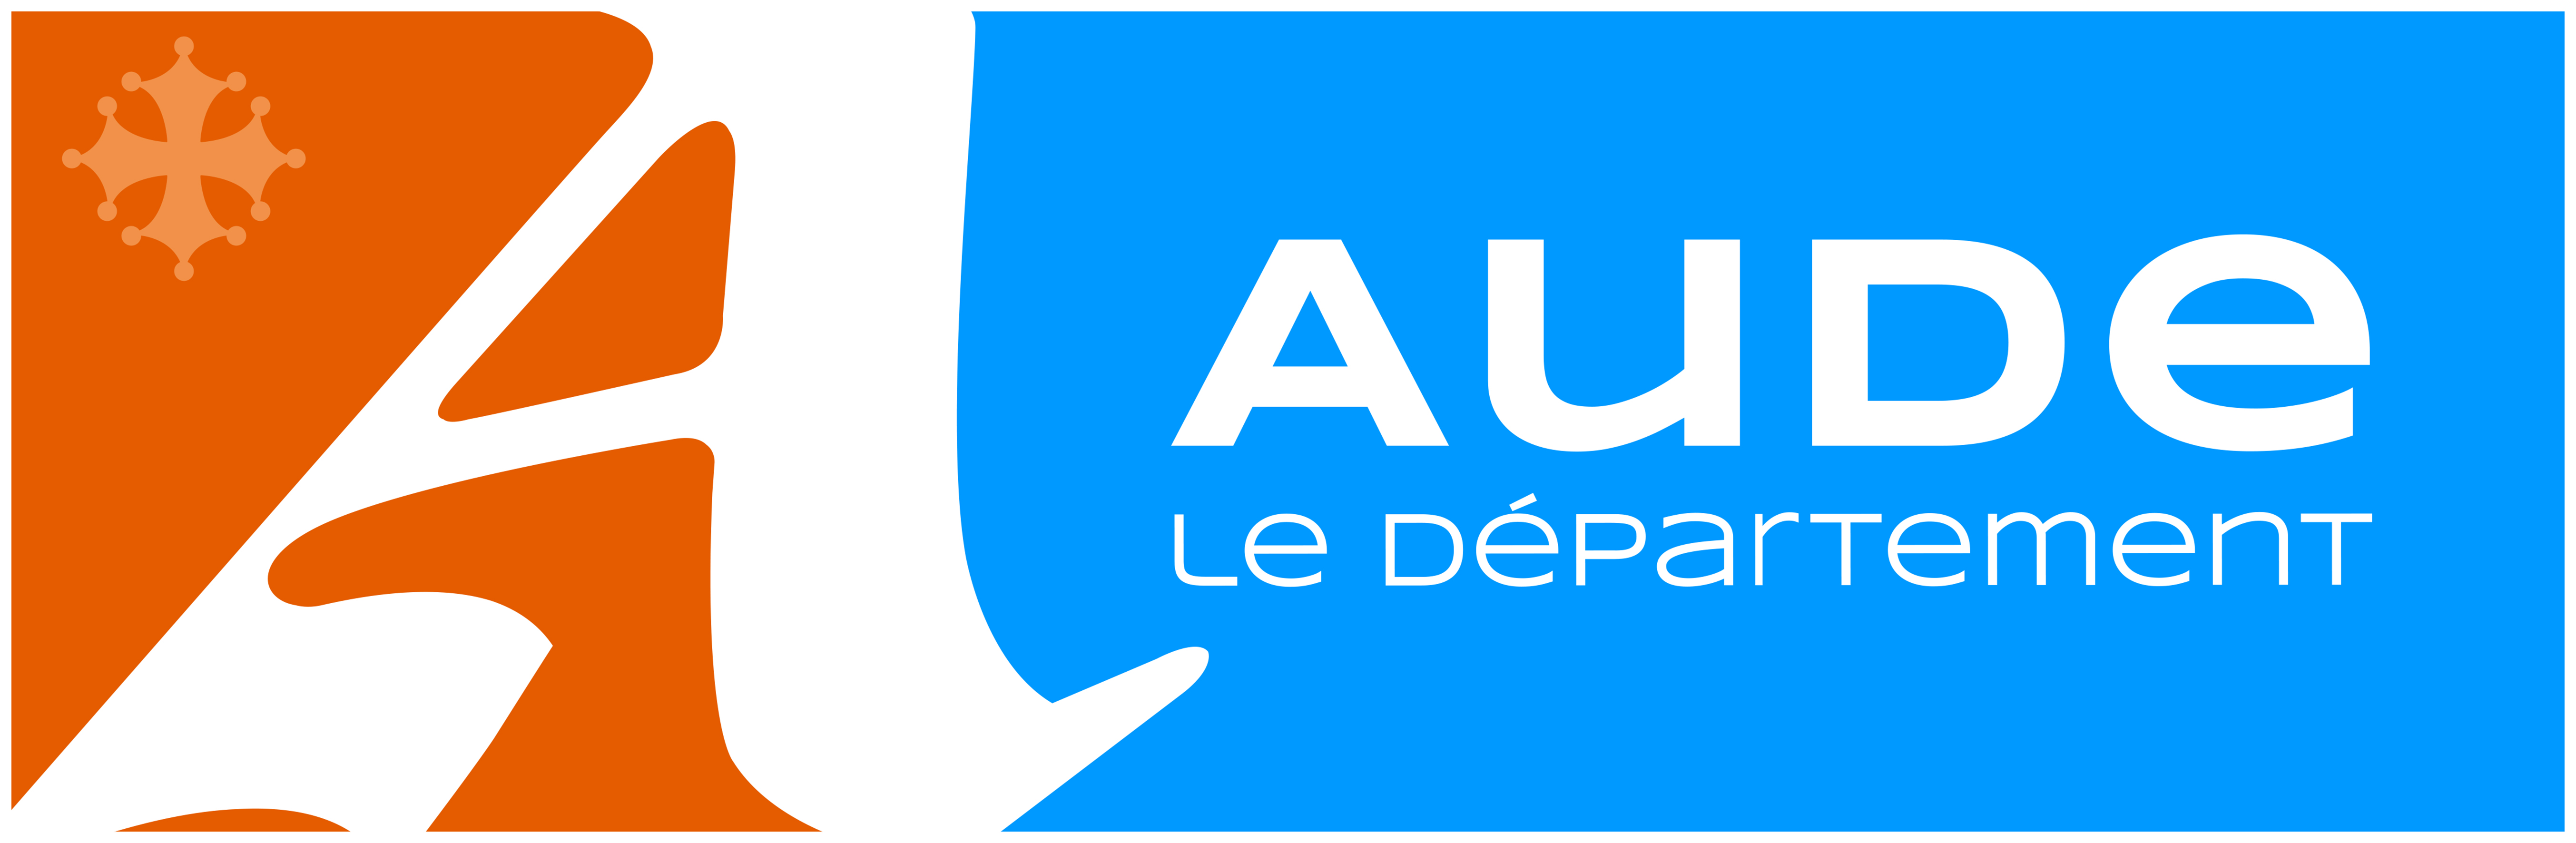 Conseil dpartemental de l'Aude